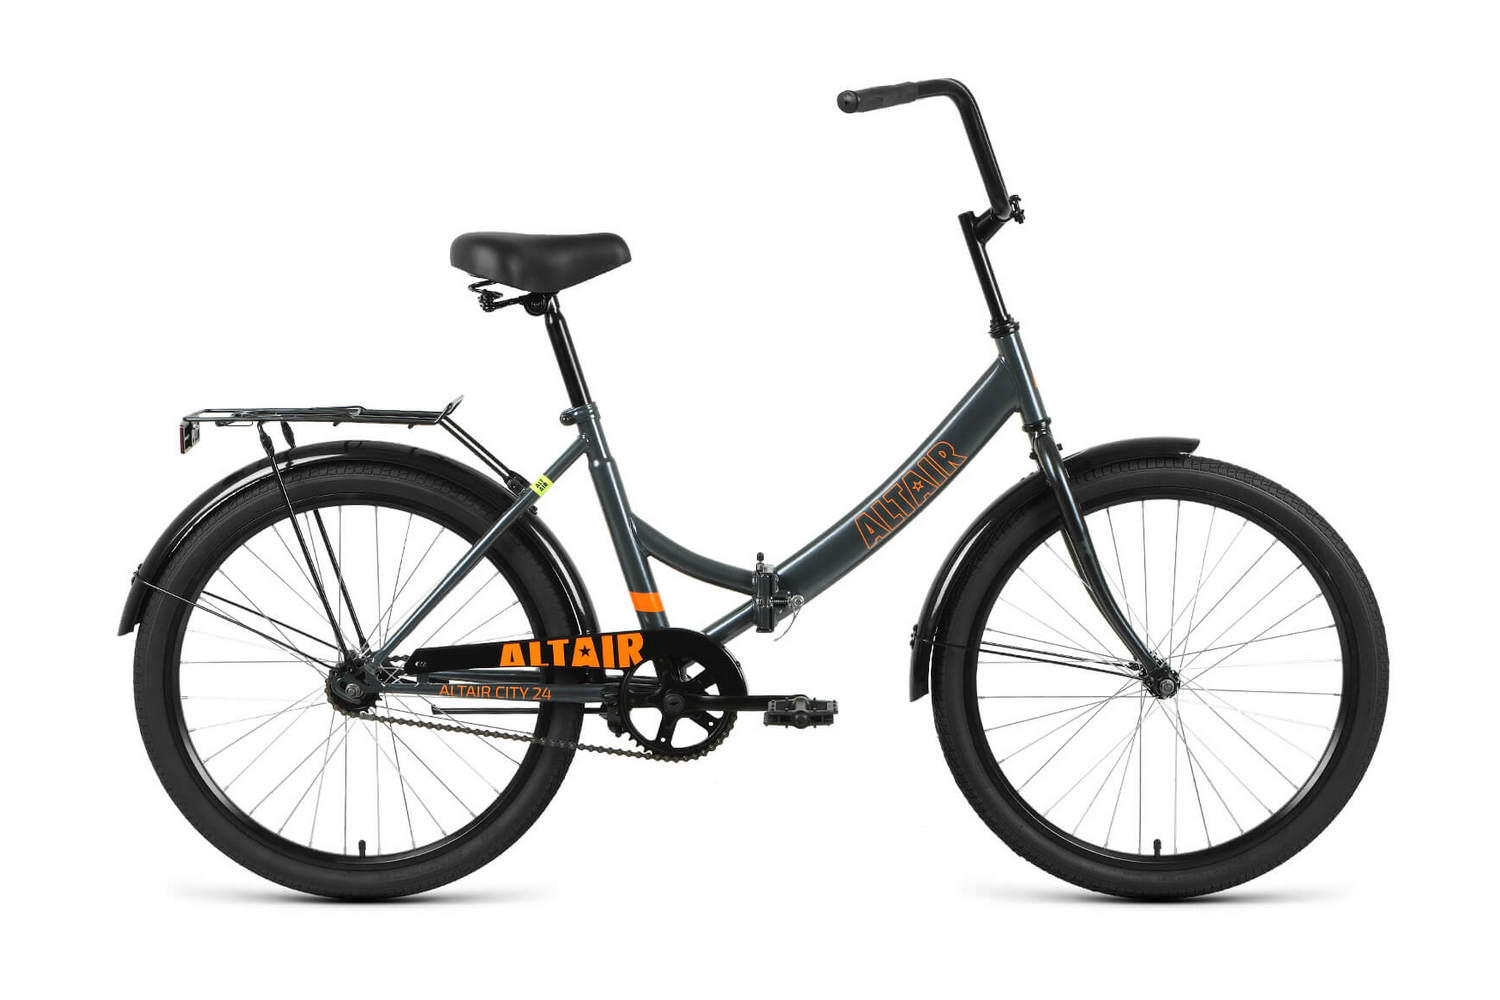 Складной велосипед Altair City 24, год 2022, цвет Серебристый-Оранжевый, ростовка 16